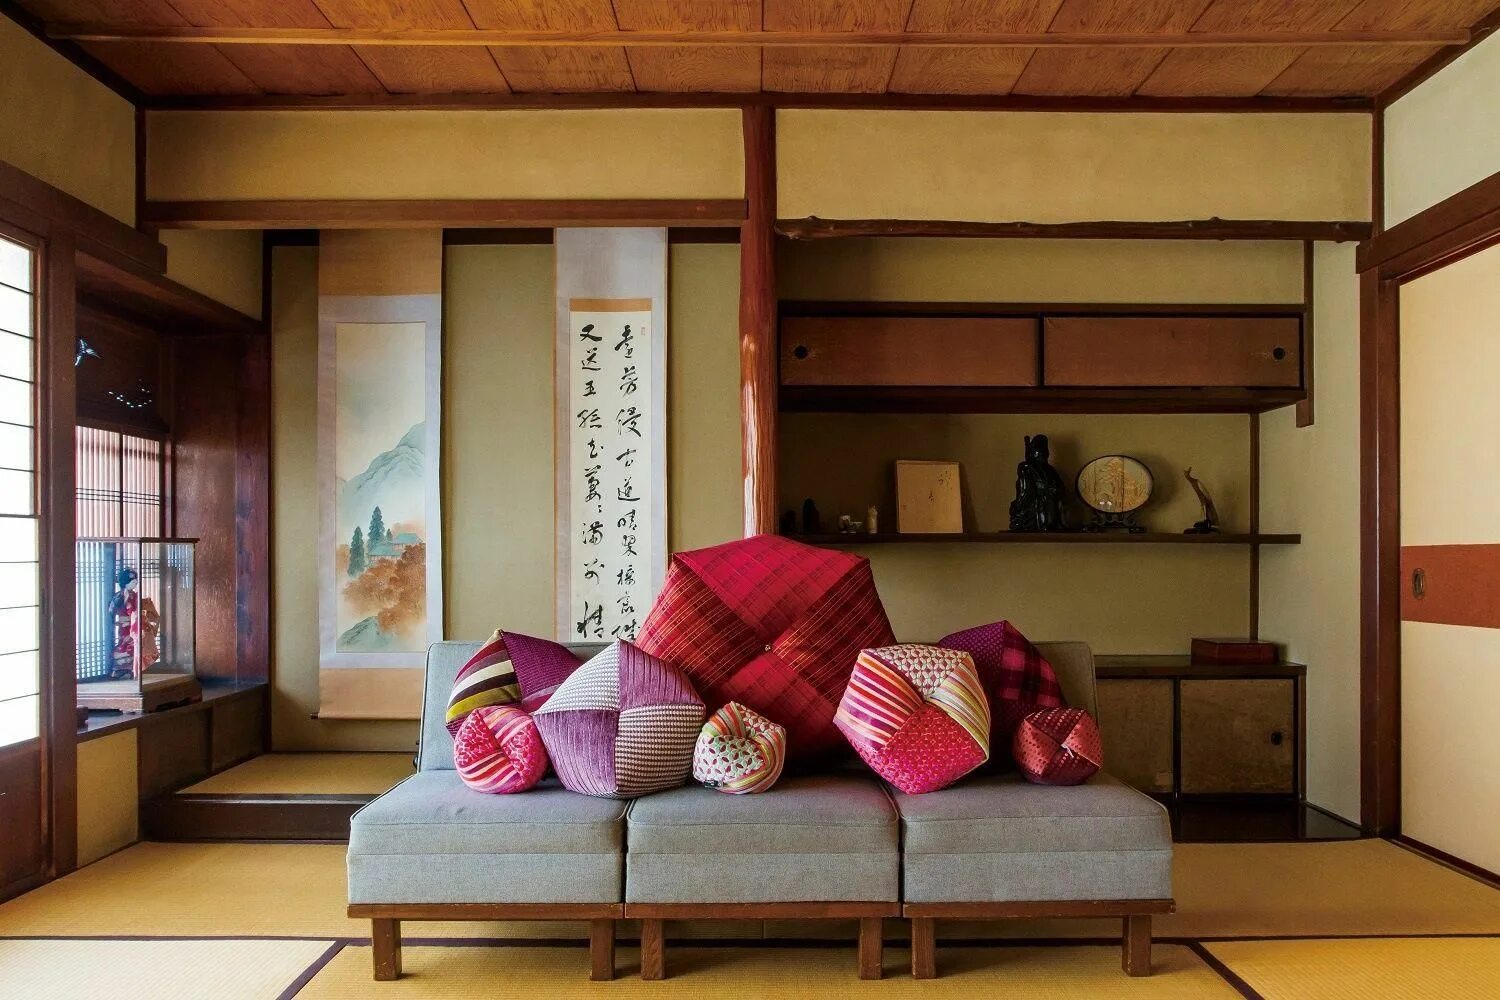 Мебель в японском стиле. Японский стиль в интерьере. Традиционная японская мебель. Шкаф в японском стиле. Asia home